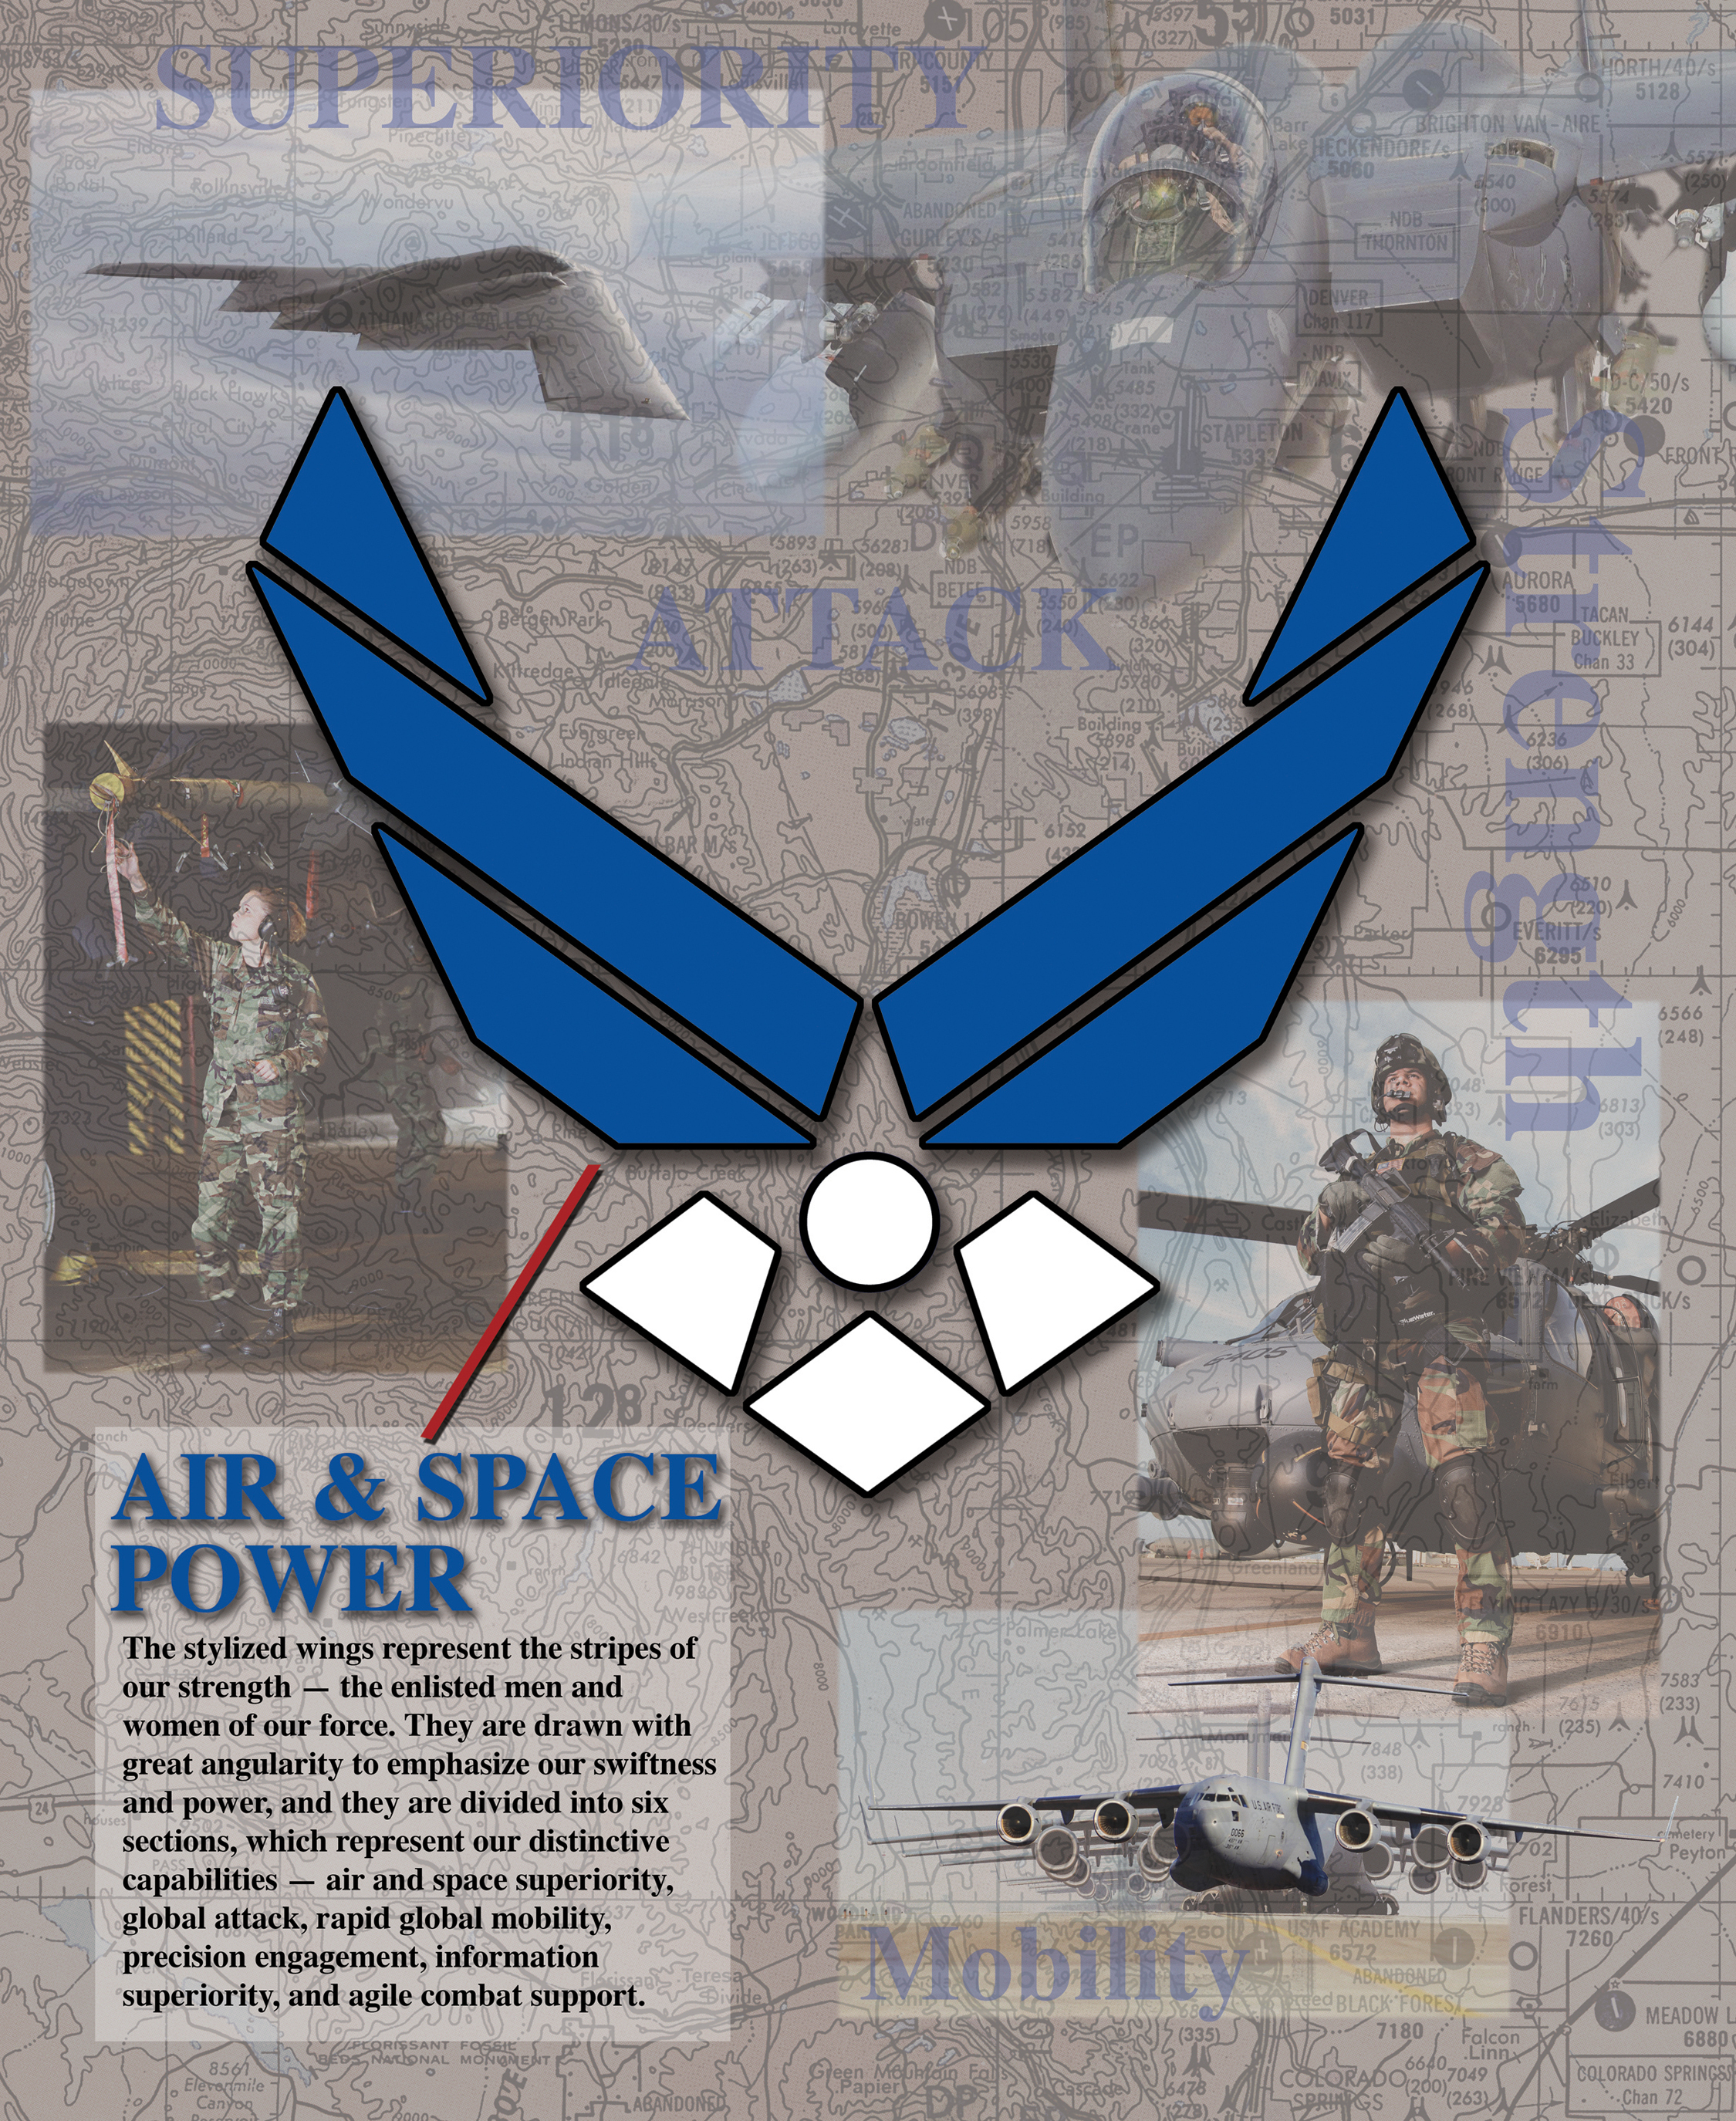 air force 1 symbol